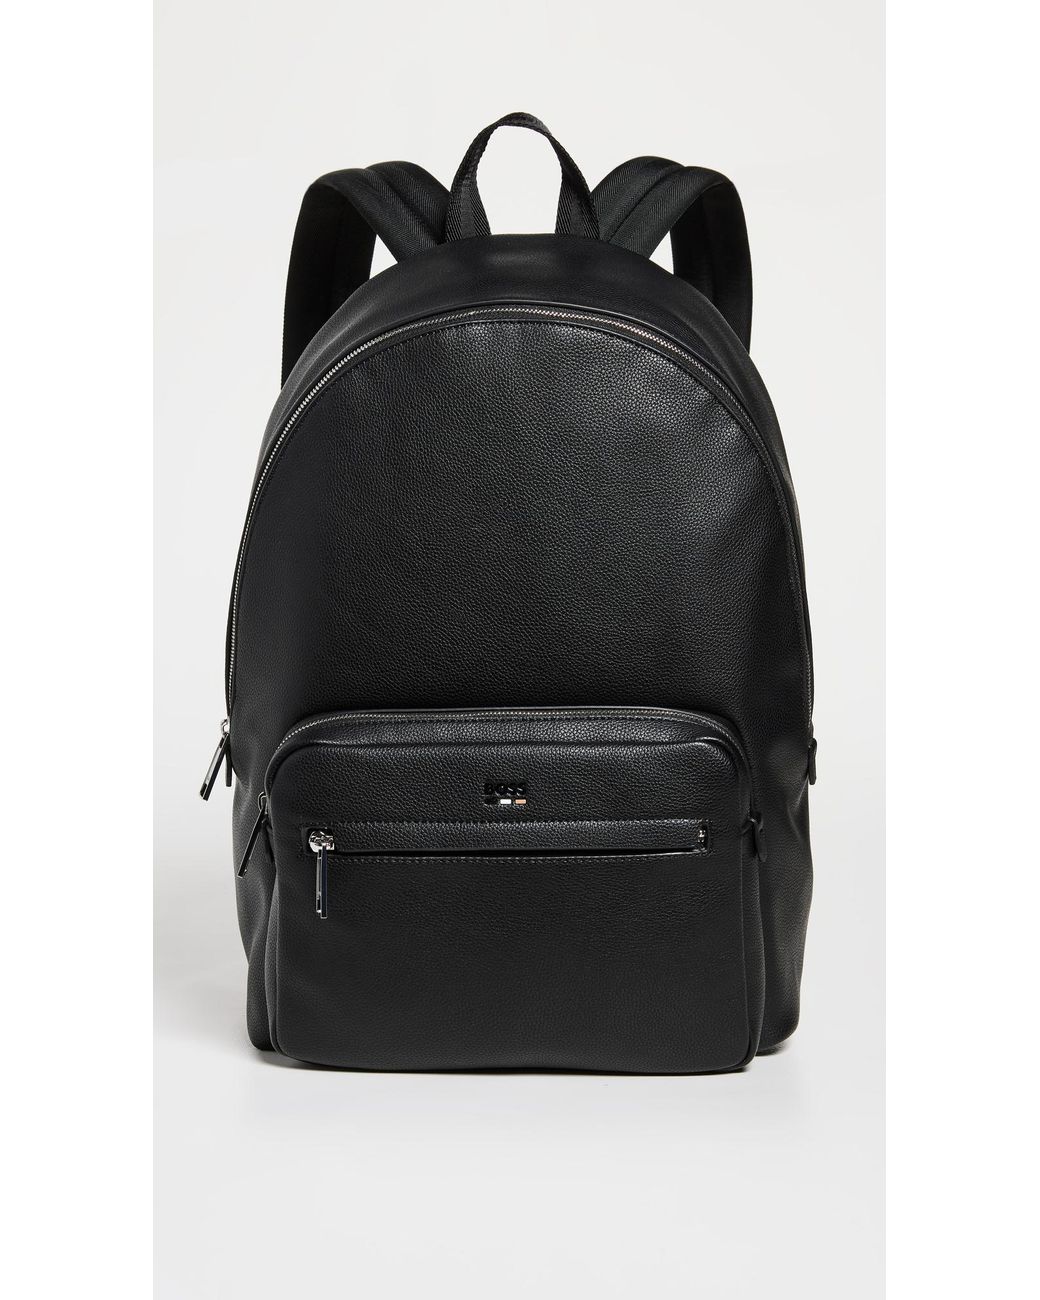 BOSS Ray Backpack in Black for Men | Lyst